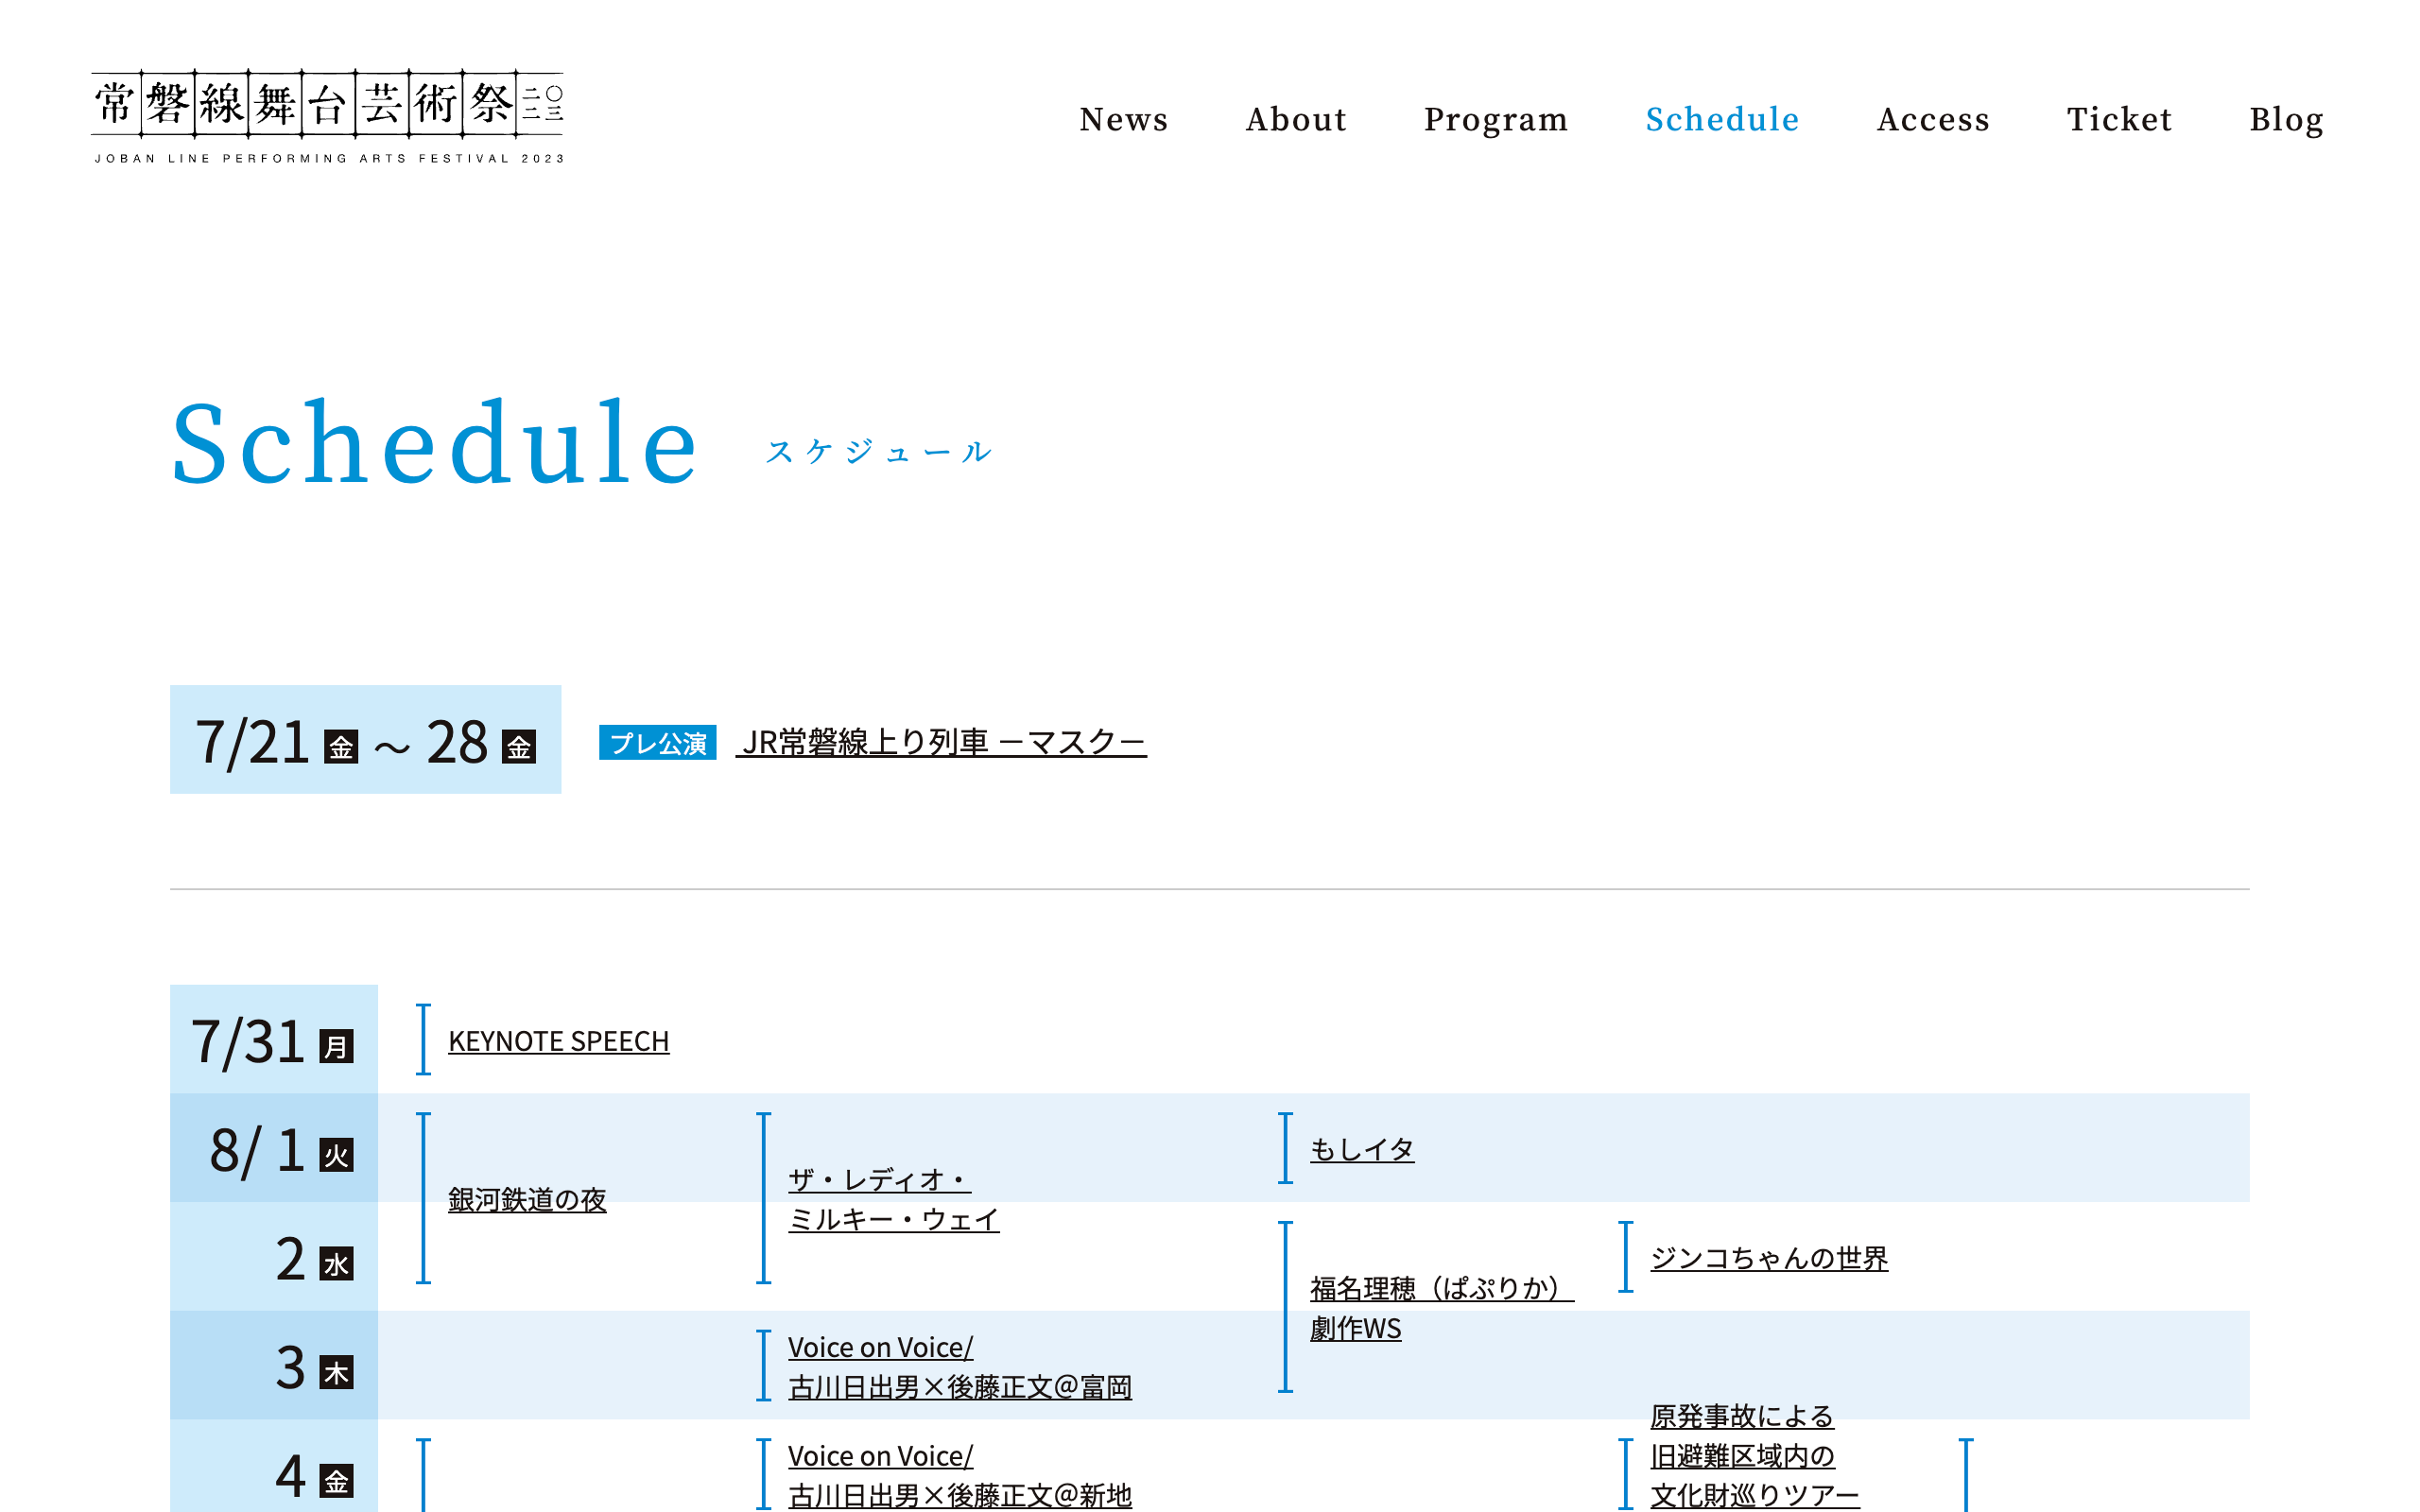 常磐線舞台芸術祭 Web PCサイト イメージ